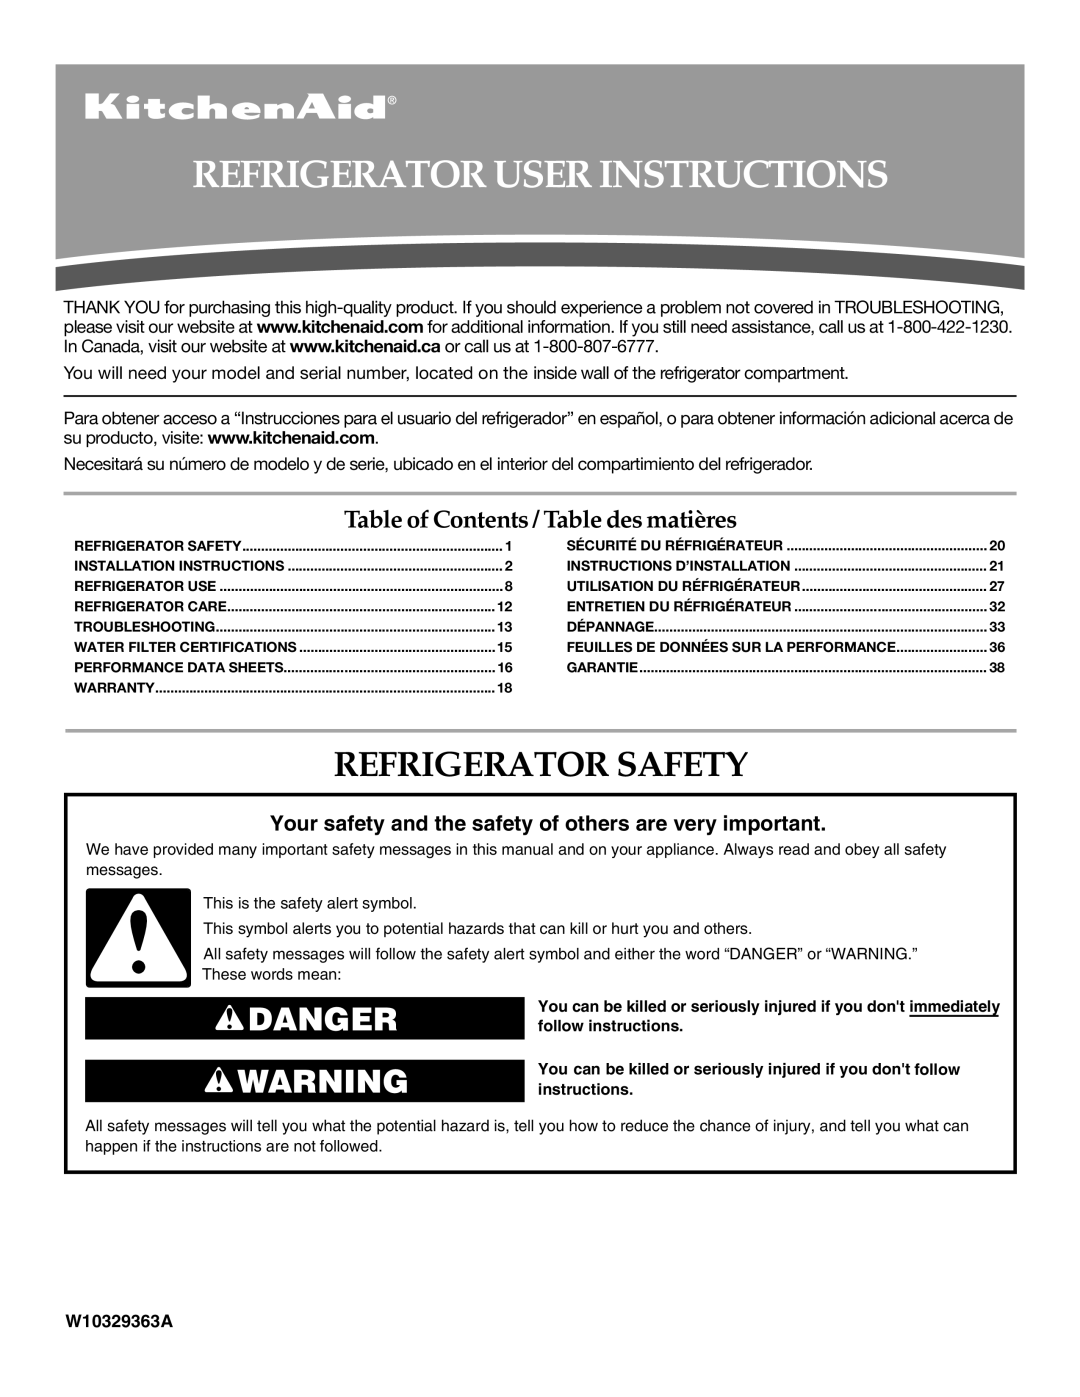 KitchenAid KFIS25XVMS9, UKF8001AXX-750 installation instructions Refrigerator User Instructions, Refrigerator Safety 